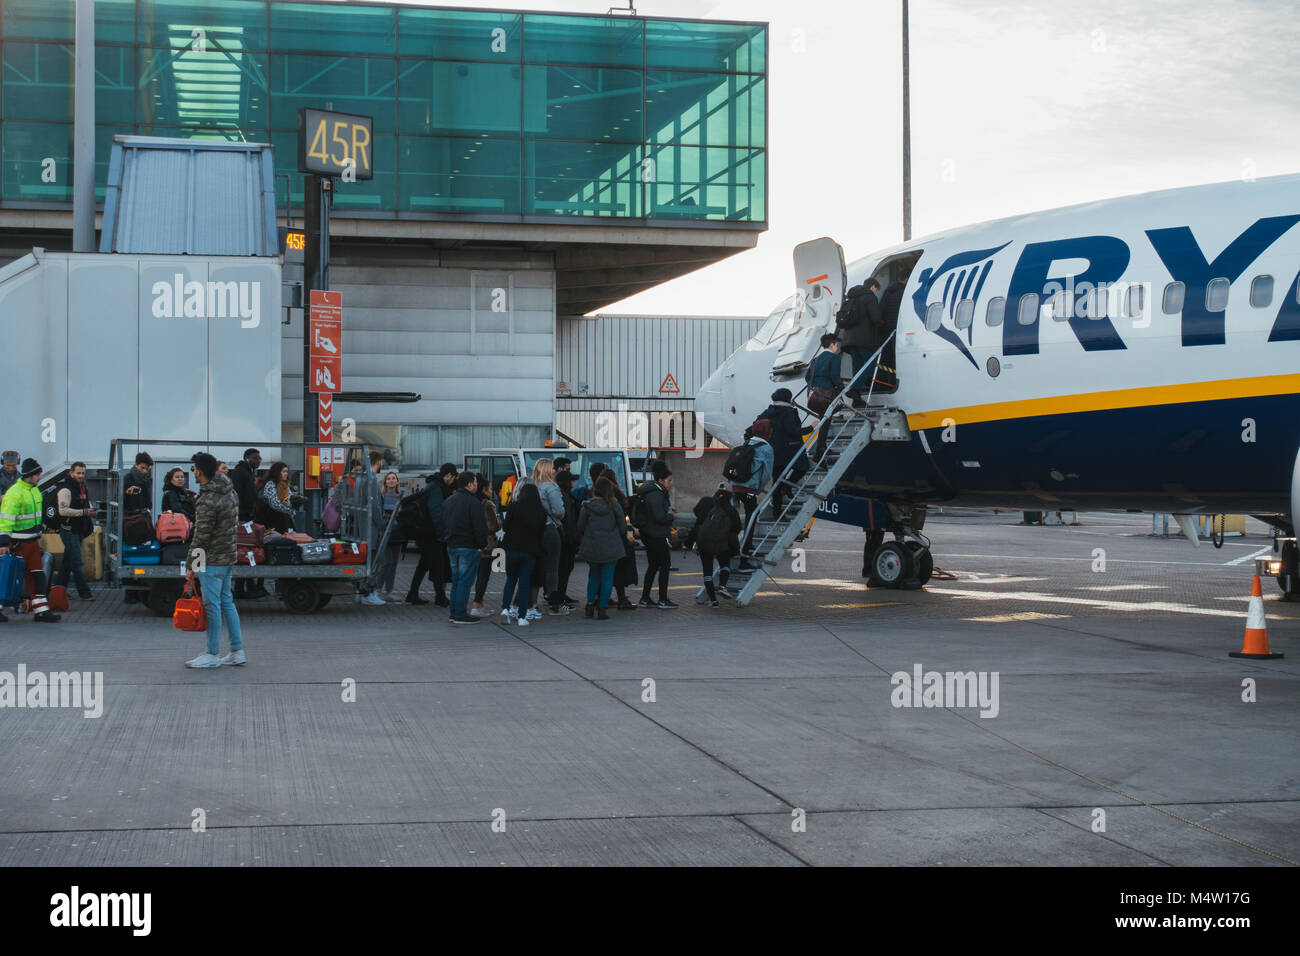 Die Fluggäste eine Ryanair Jet nach Ihrer neuen Handgepäck Politik in Kraft getreten -, in denen Sie Ihr Gepäck zu beladen Besatzung verfallen, Stockfoto